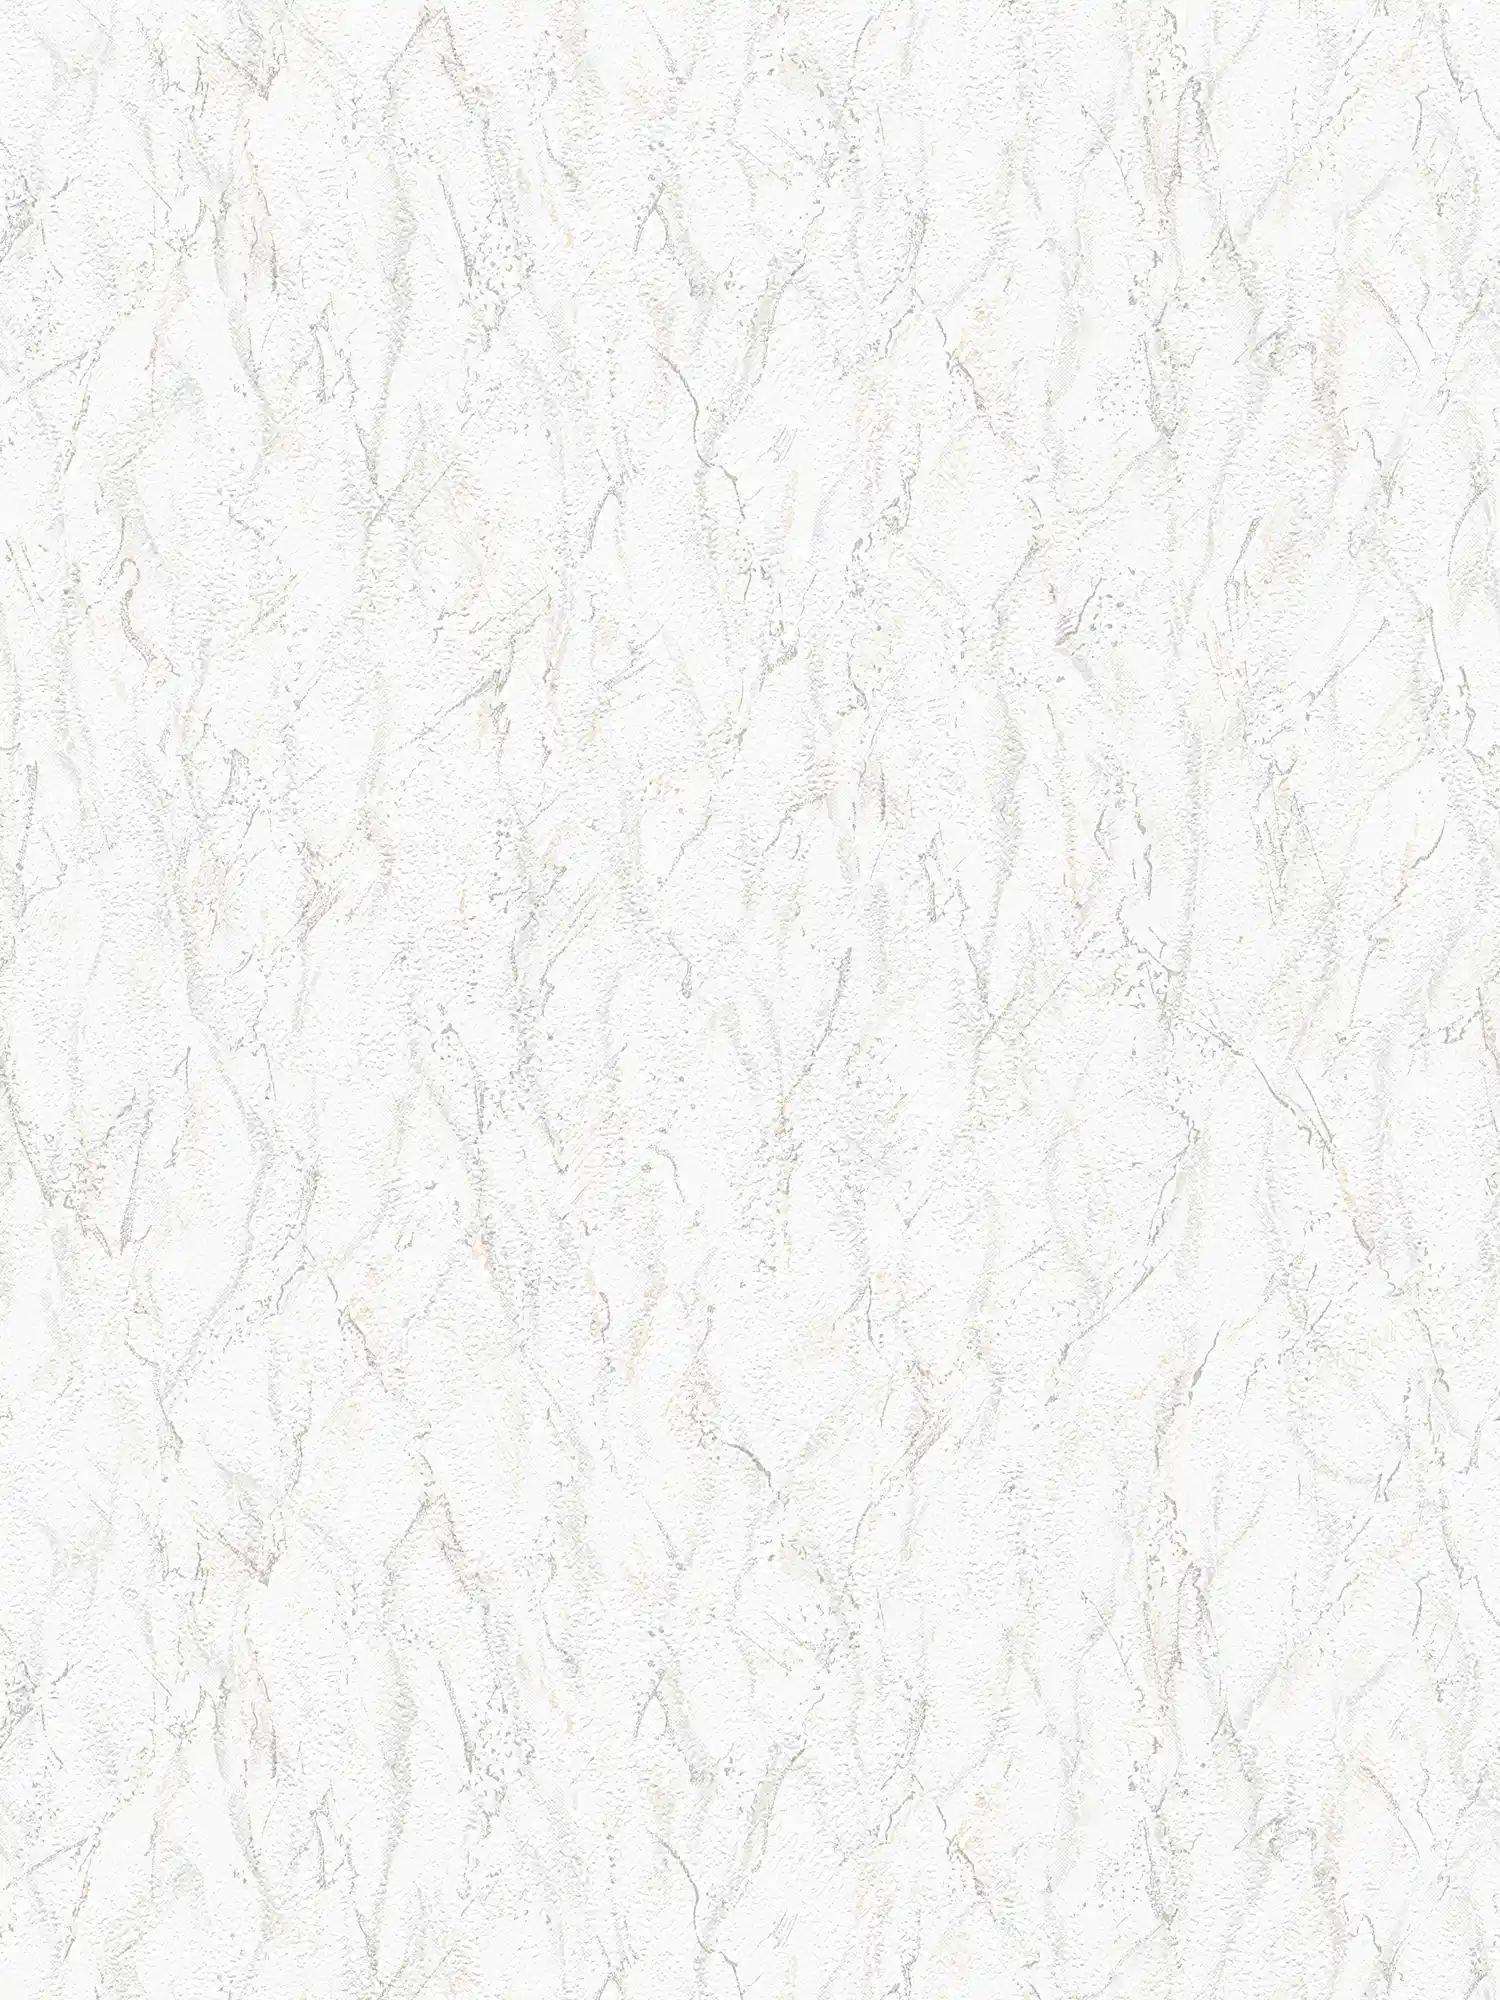 Strukturtapete mit Prägemuster & Marmor-Effekt – Grau, Weiß
